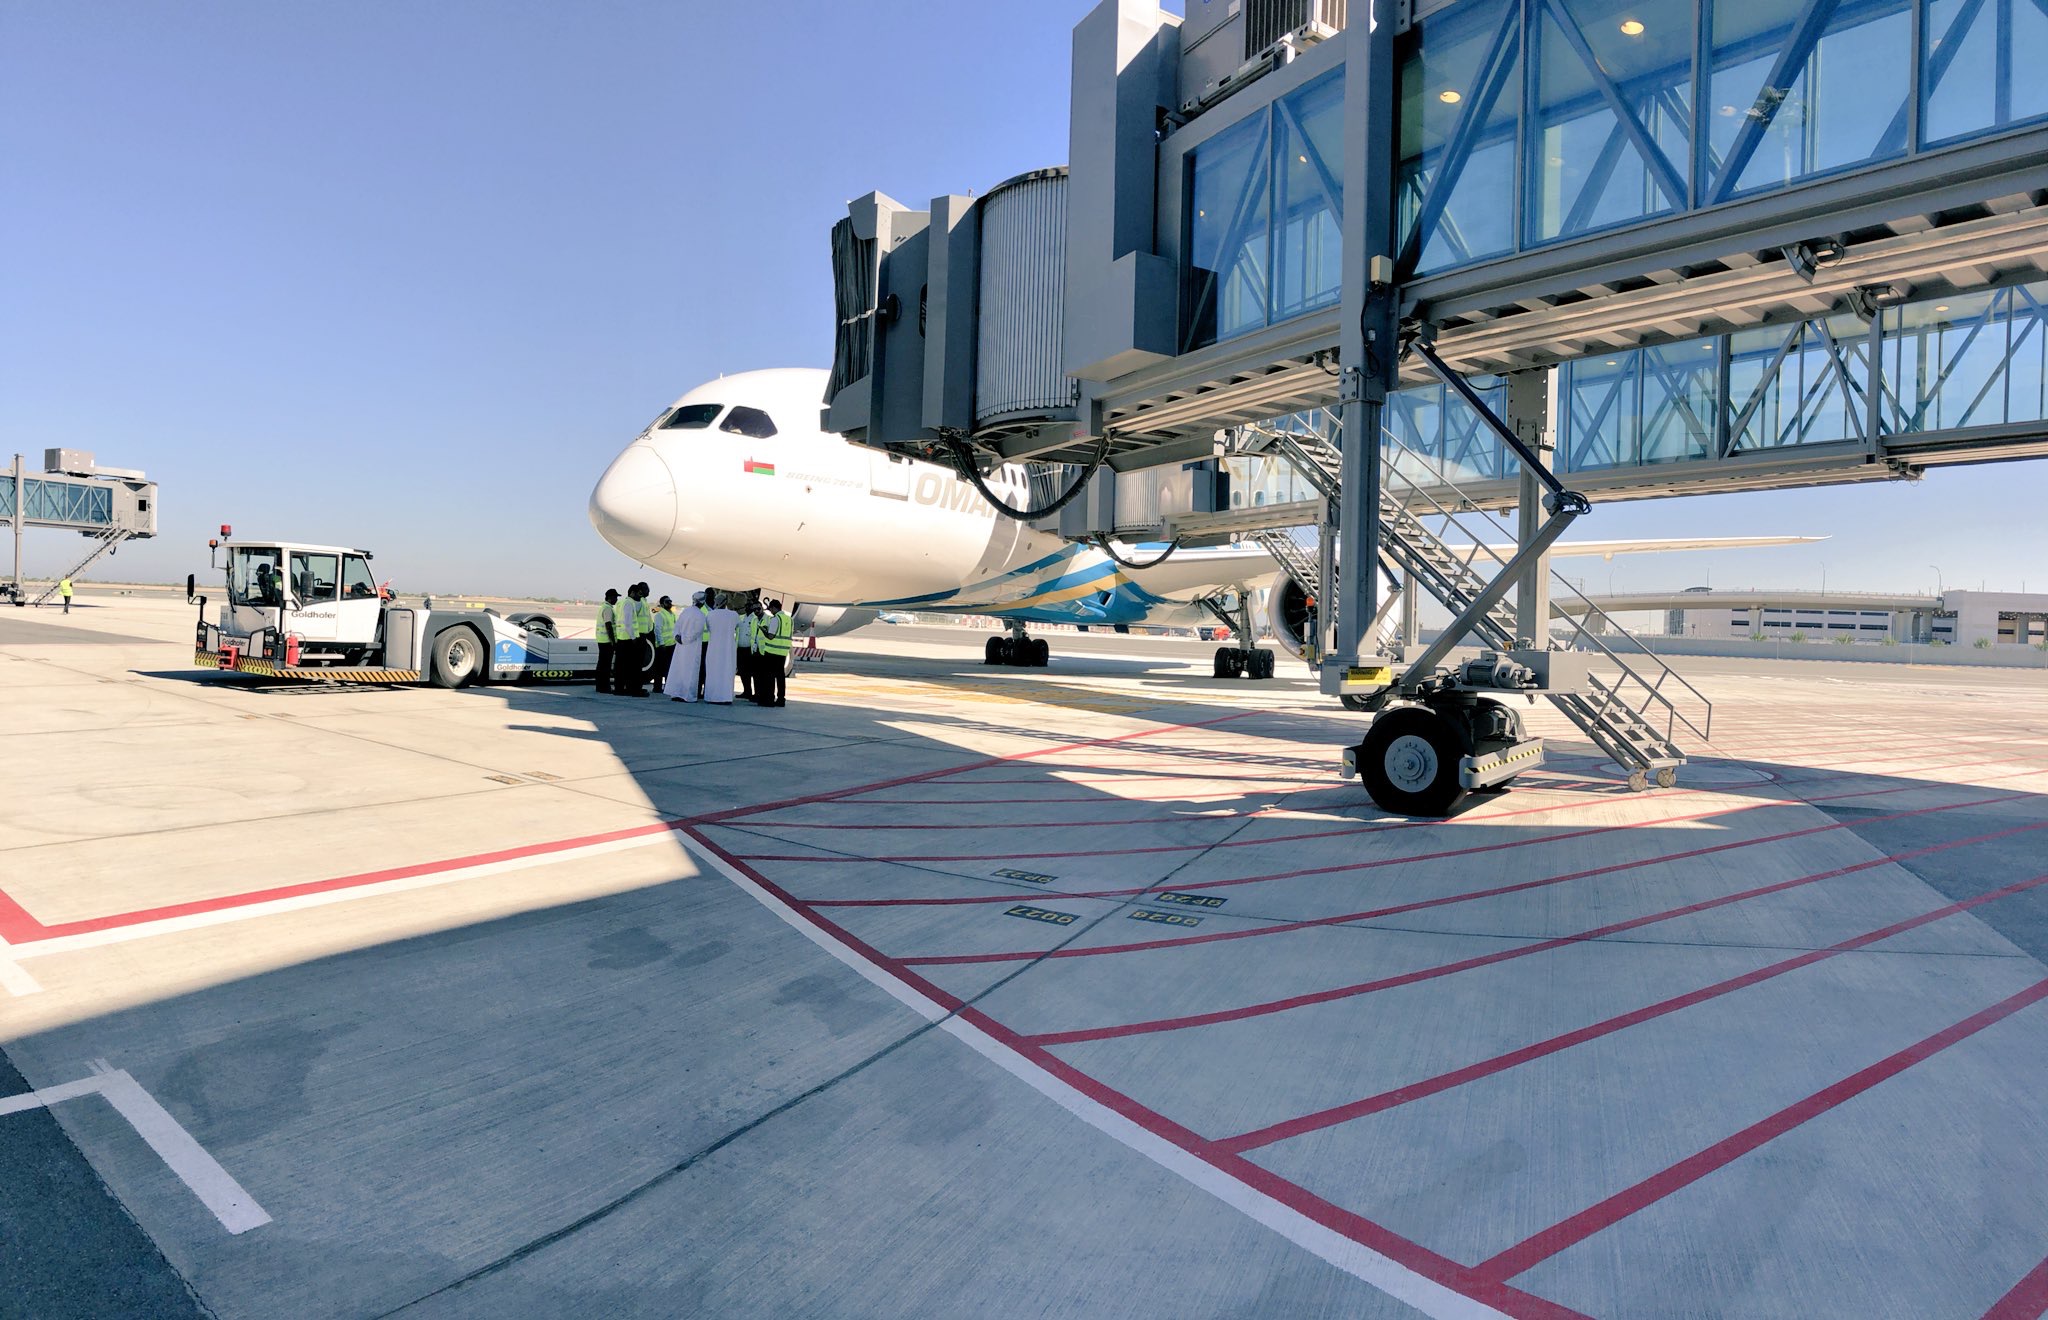 شاهد بالصور.. انطلاق أول رحلة تجريبية من مبنى المسافرين بمطار مسقط الجديد